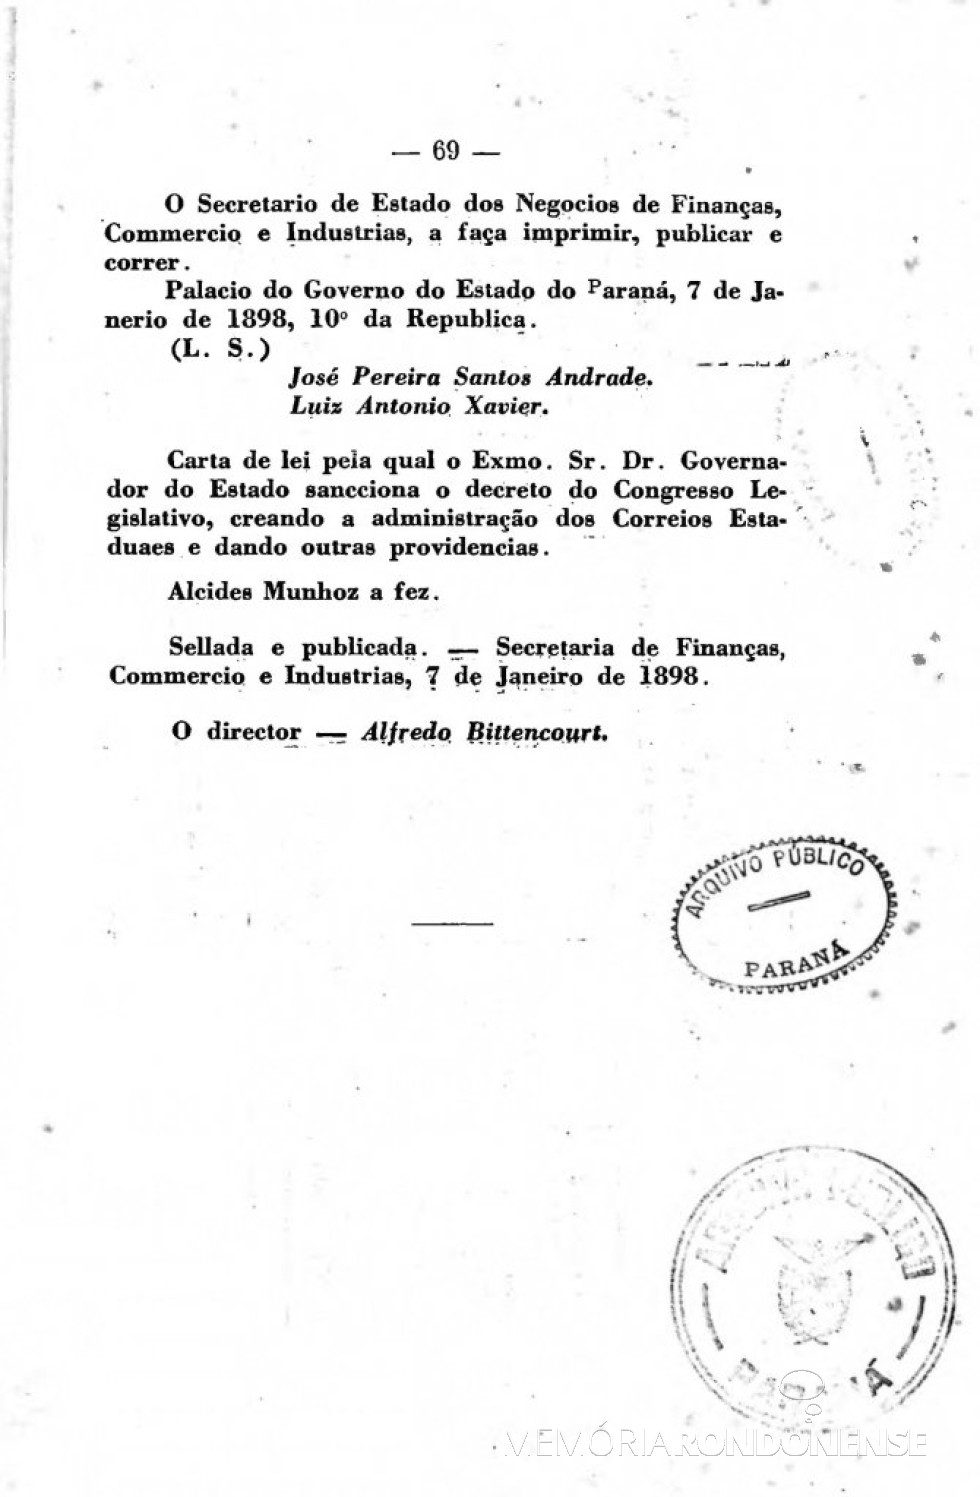 Página 3 da publicação da Lei nº 276/1898. 
Imagem: Acervo Arquivo Público do Paraná - FOTO 4 - 